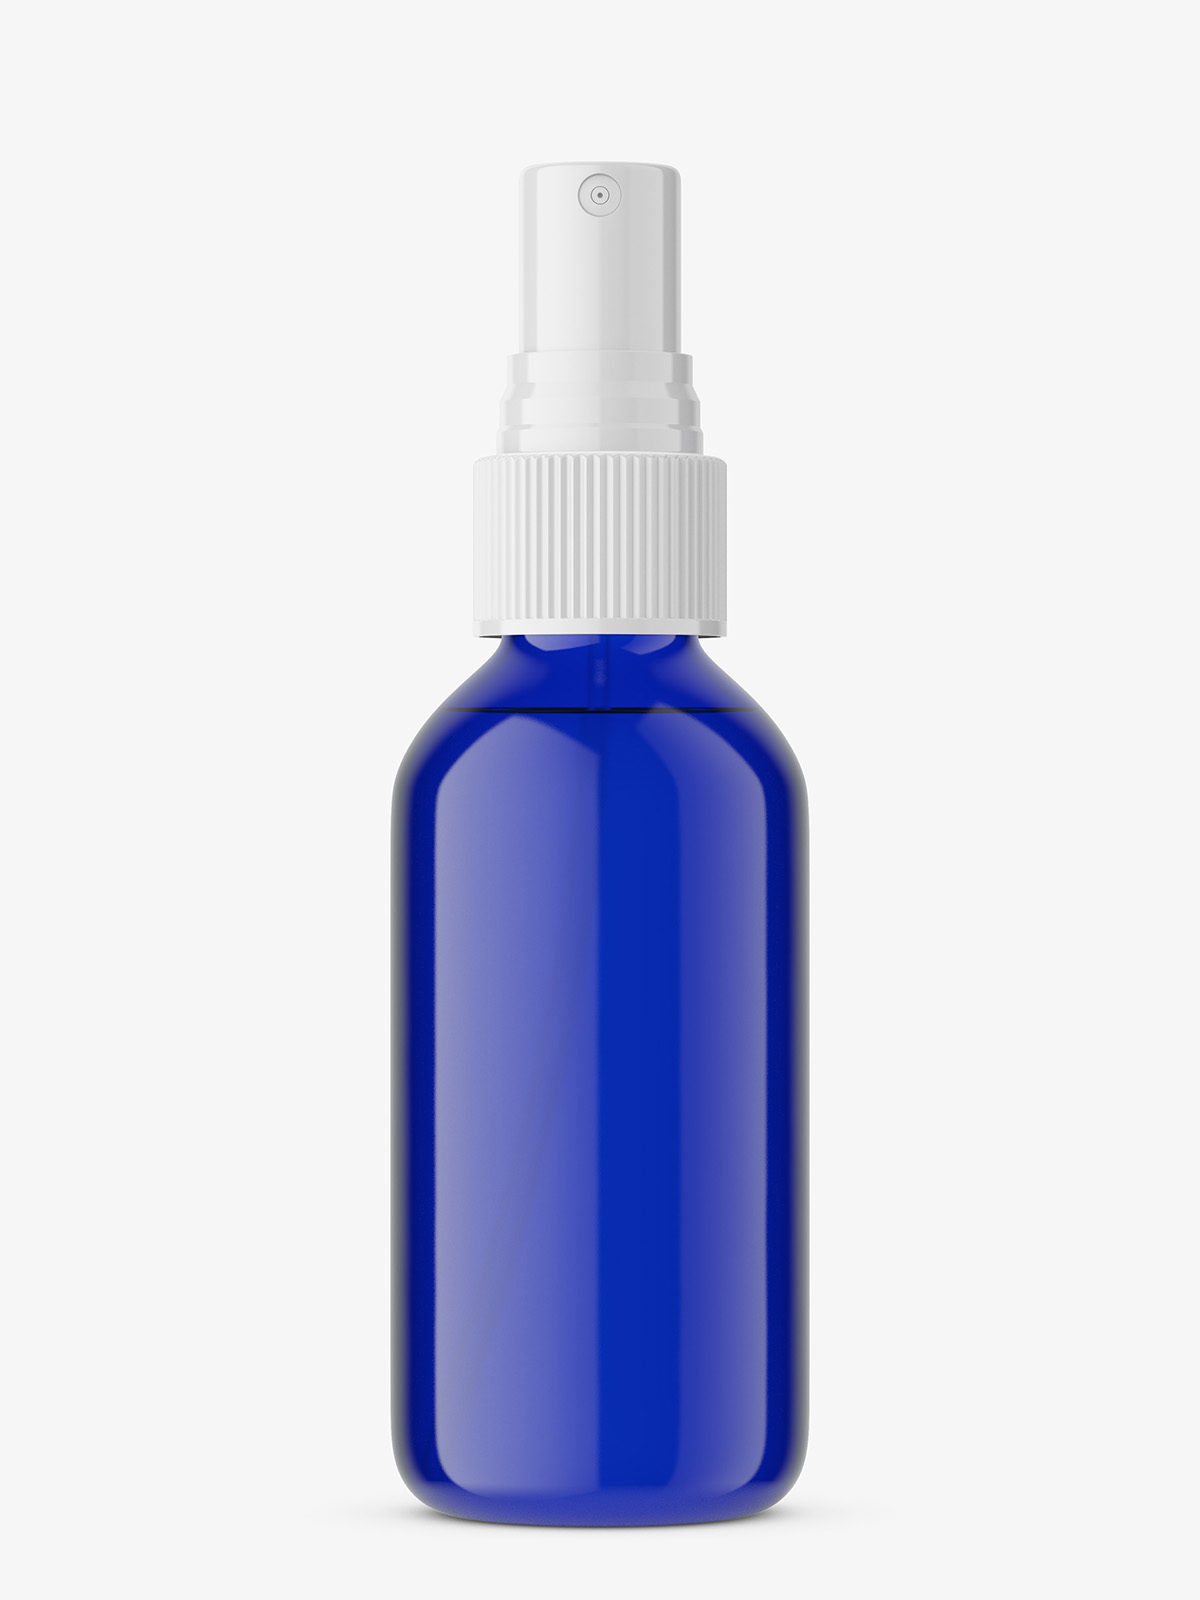 Download Cobalt spray bottle mockup - Smarty Mockups